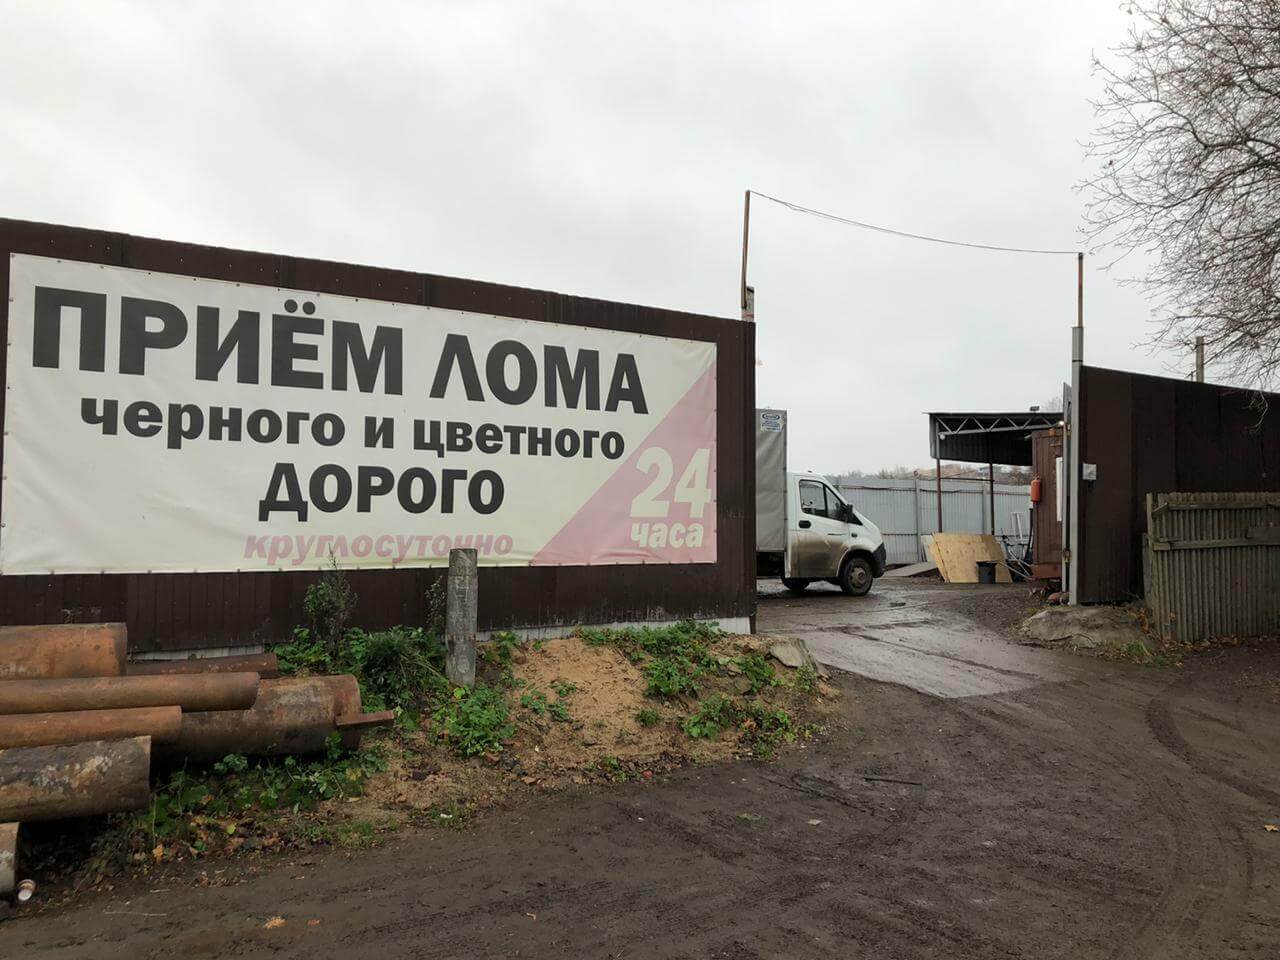 Двое жителей Усманского района похитили с дачи в п. Добринка 80 кг чермета.